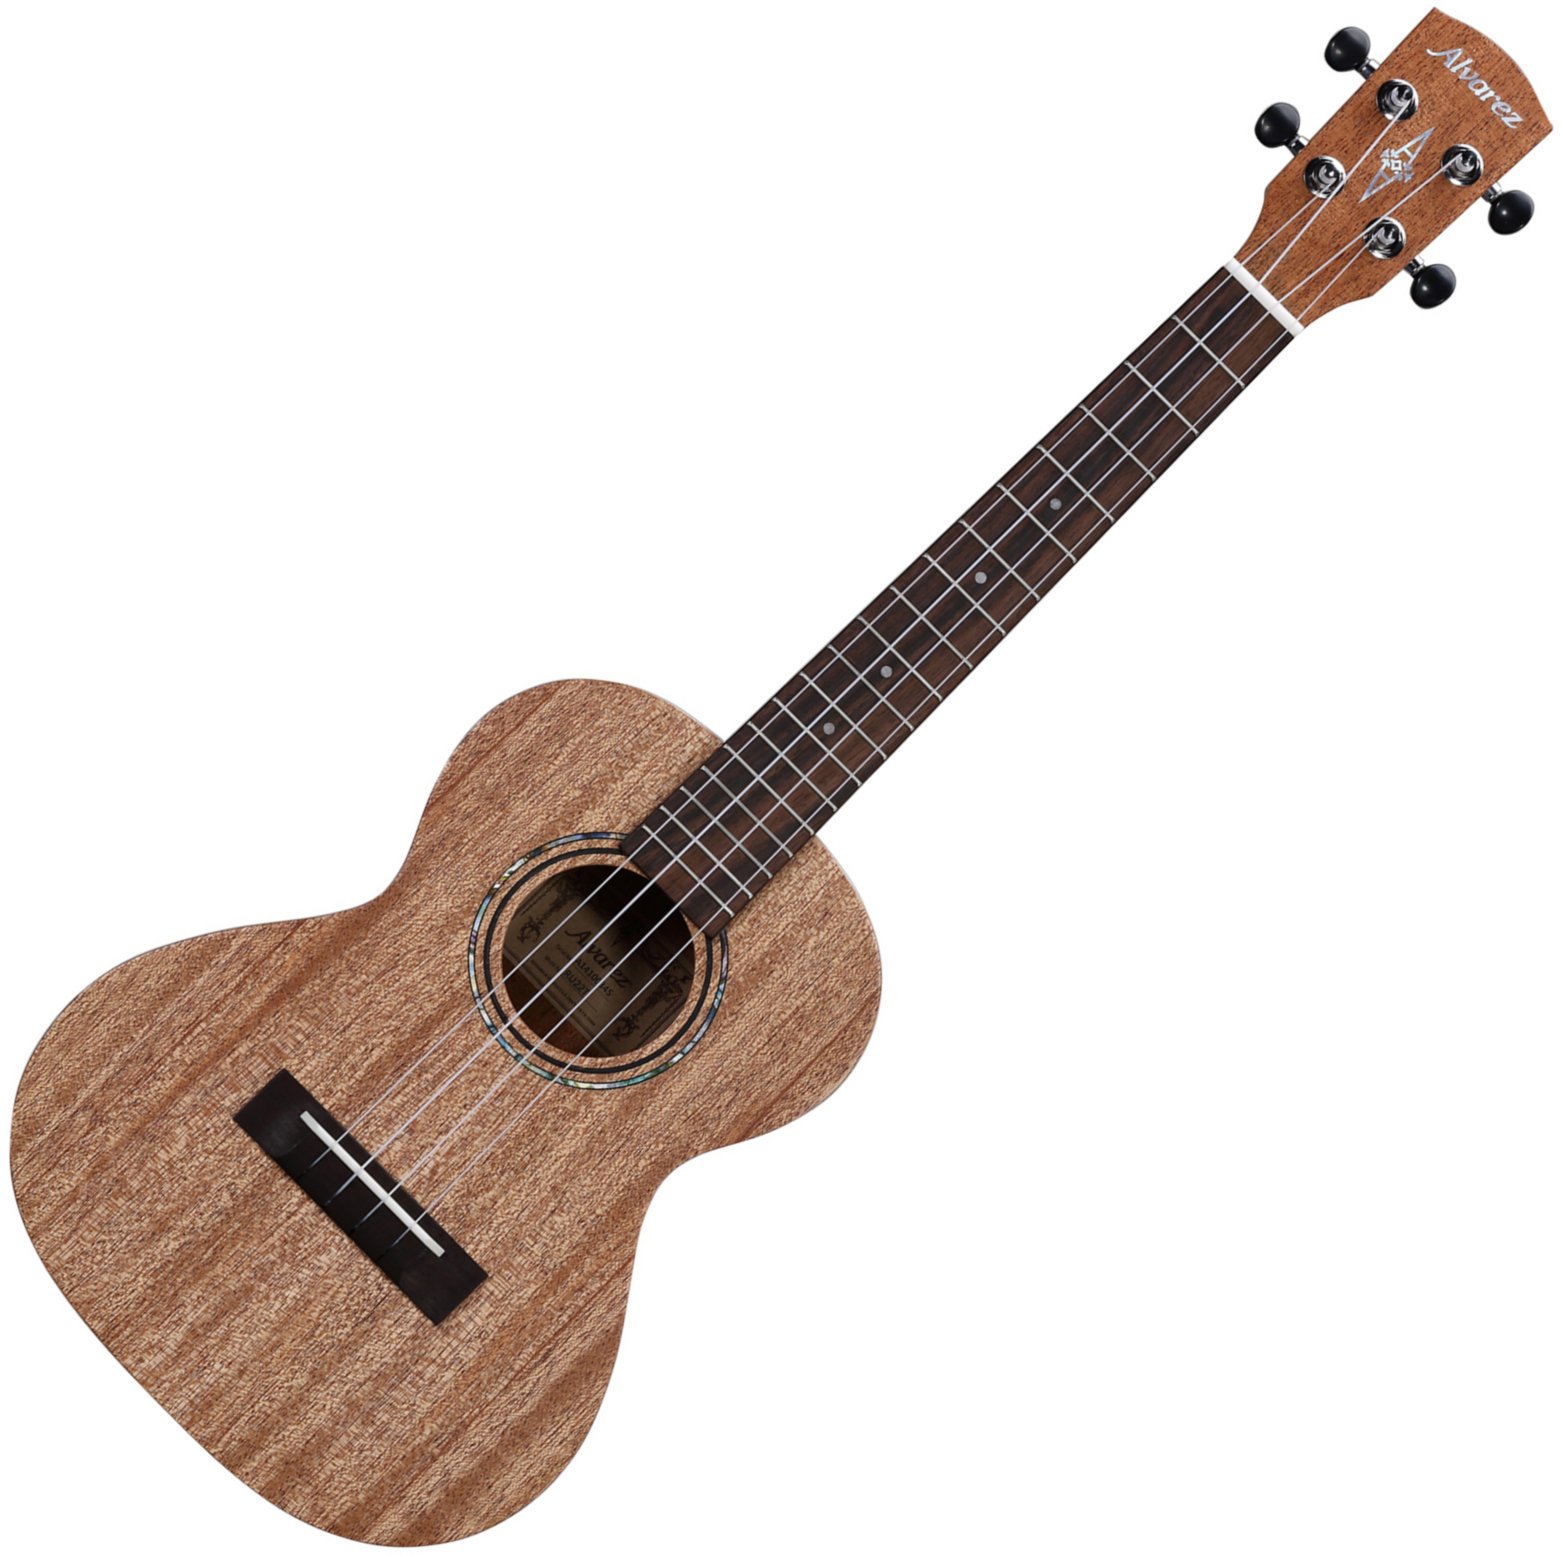 Tenori-ukulele Alvarez RU22T Tenori-ukulele Natural